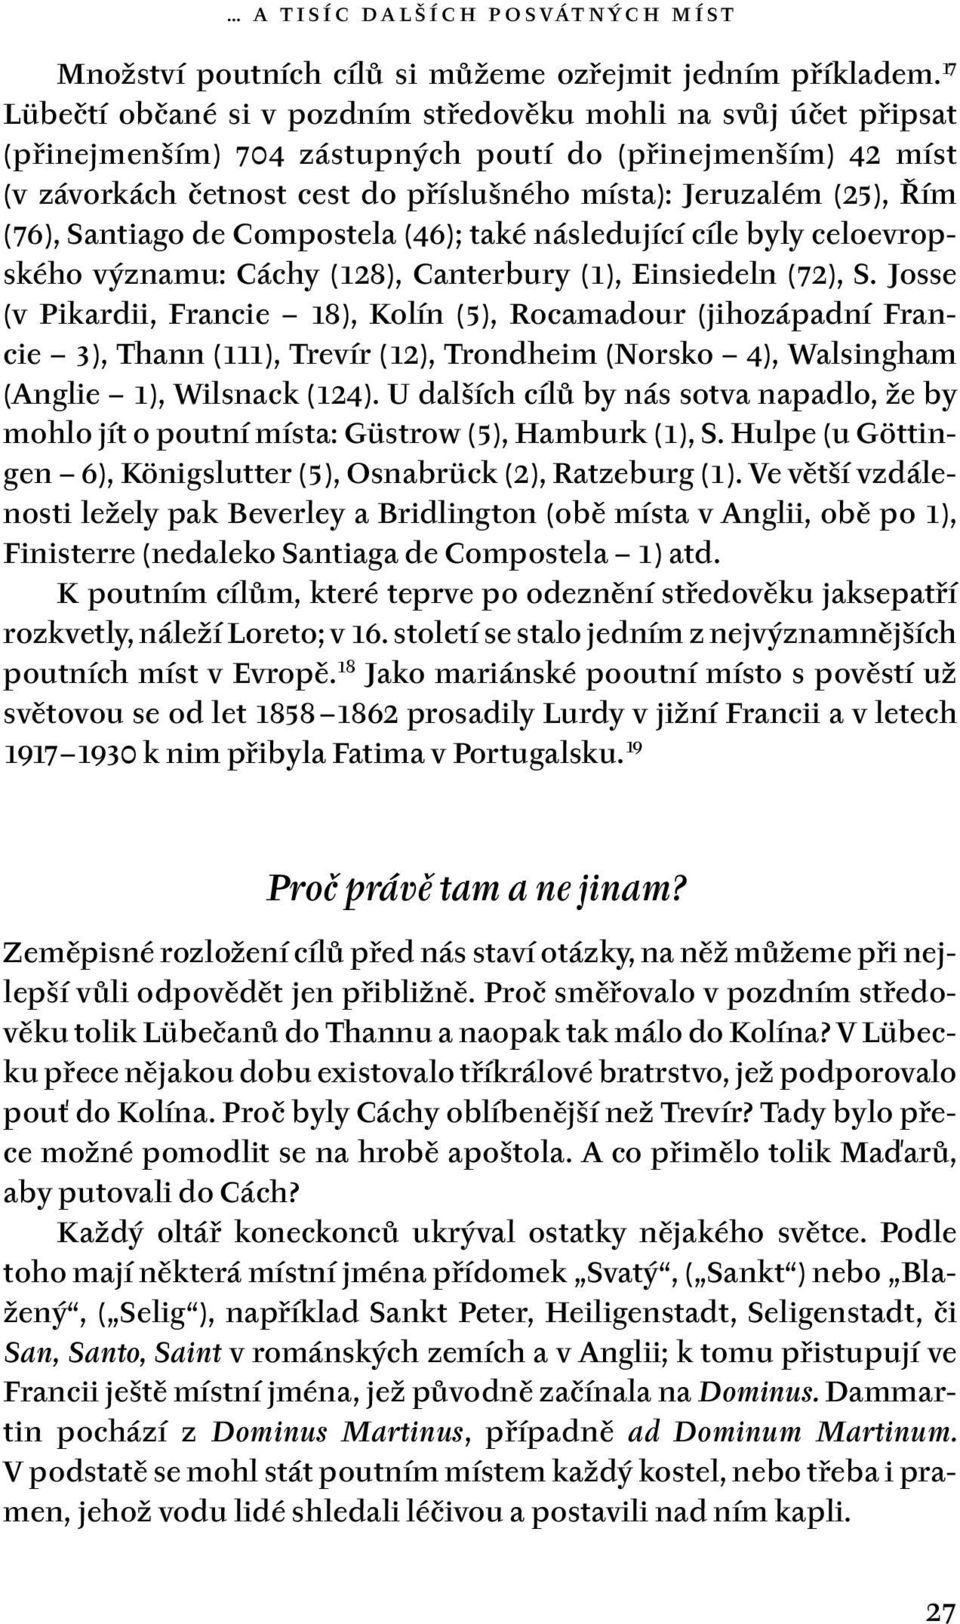 Náboženské poutě ve středověku a novověku - PDF Free Download